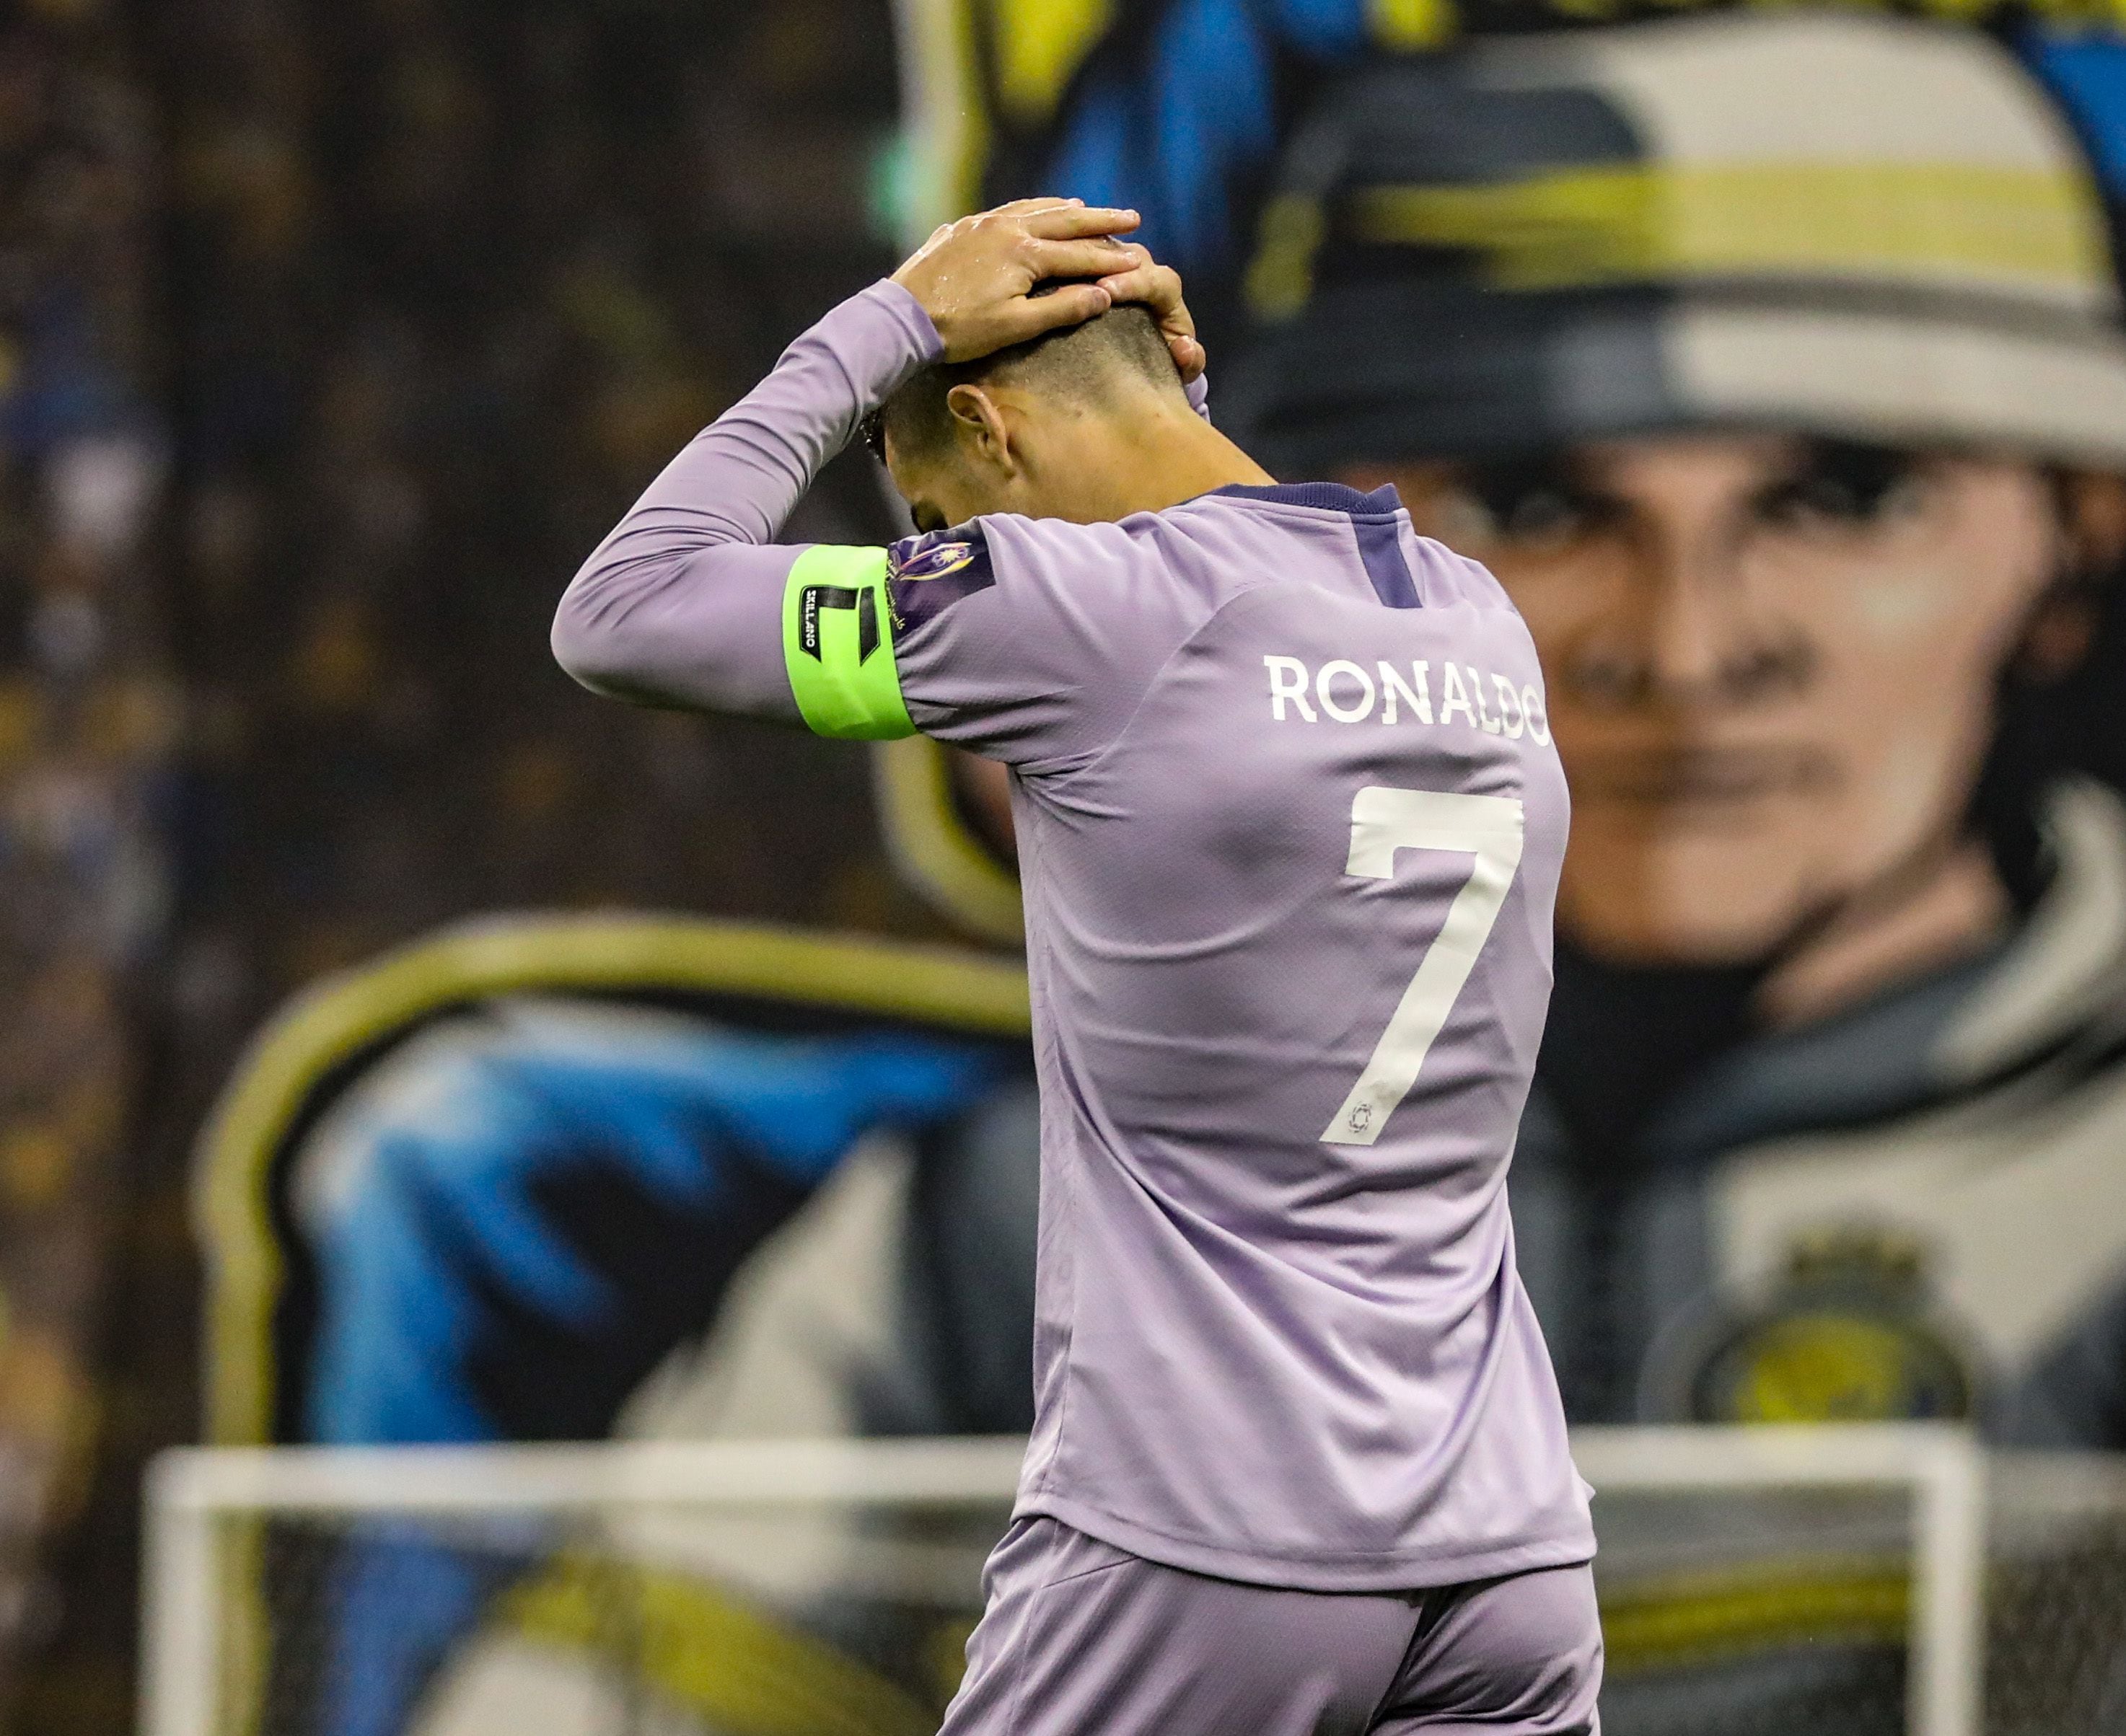 Compañero de Cristiano Ronaldo, ve el lado malo de tenerlo en Al Nassr: “su  presencia hace que se nos dificulte”